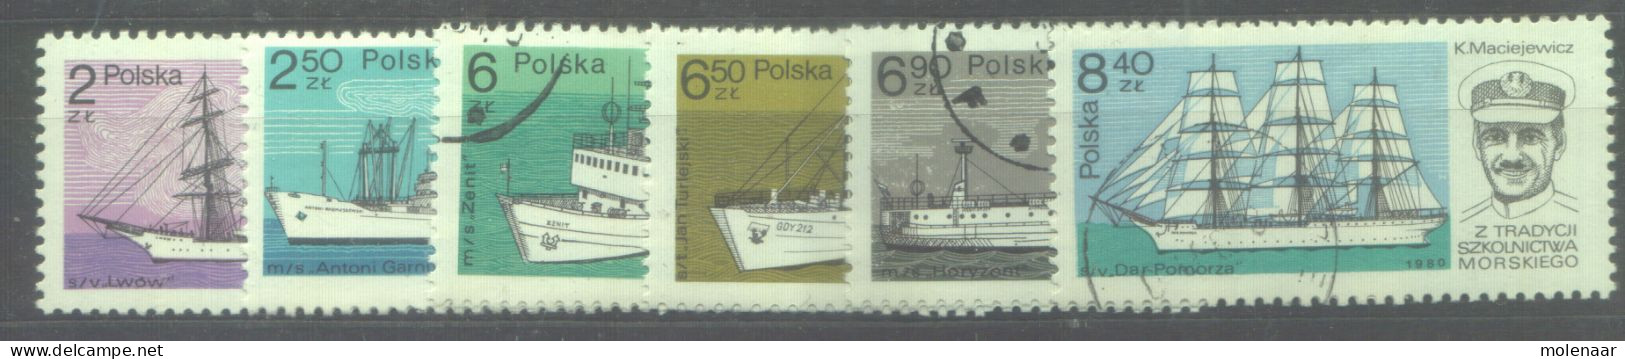 Postzegels > Europa > Polen > 1944-.... Republiek > 1981-90 > Gebruikt 2701-2706 (12187) - Usati